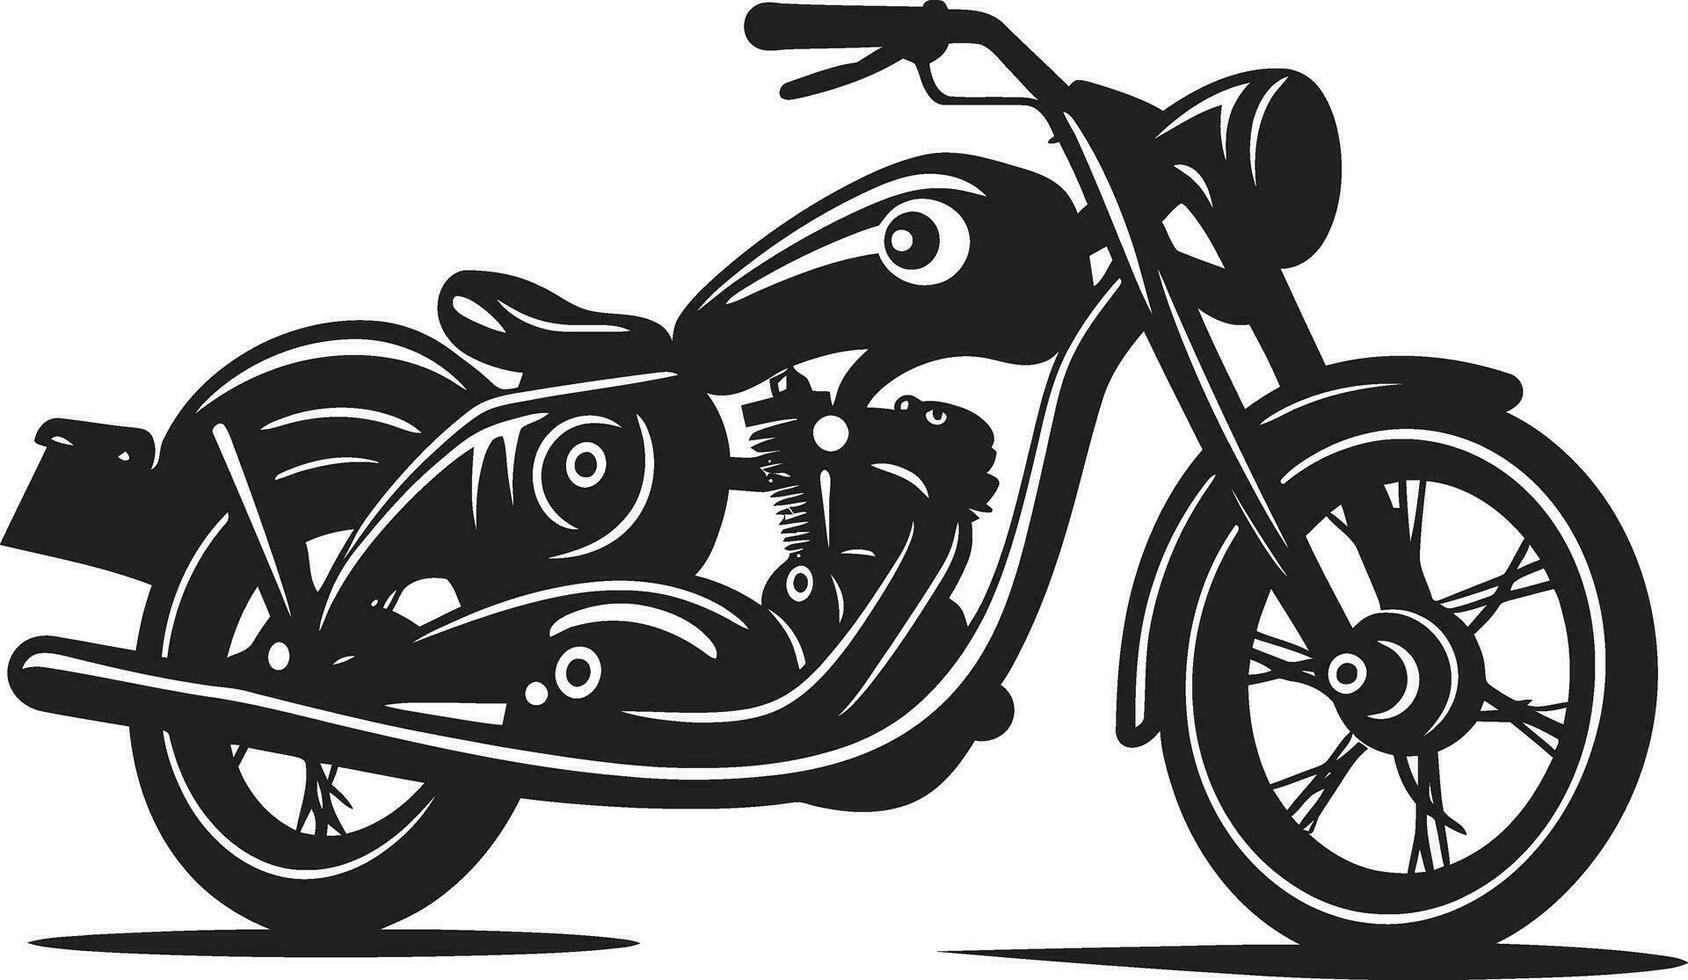 chasing avventura motociclo vettore arte vettore moto nel movimento dinamico illustrazioni